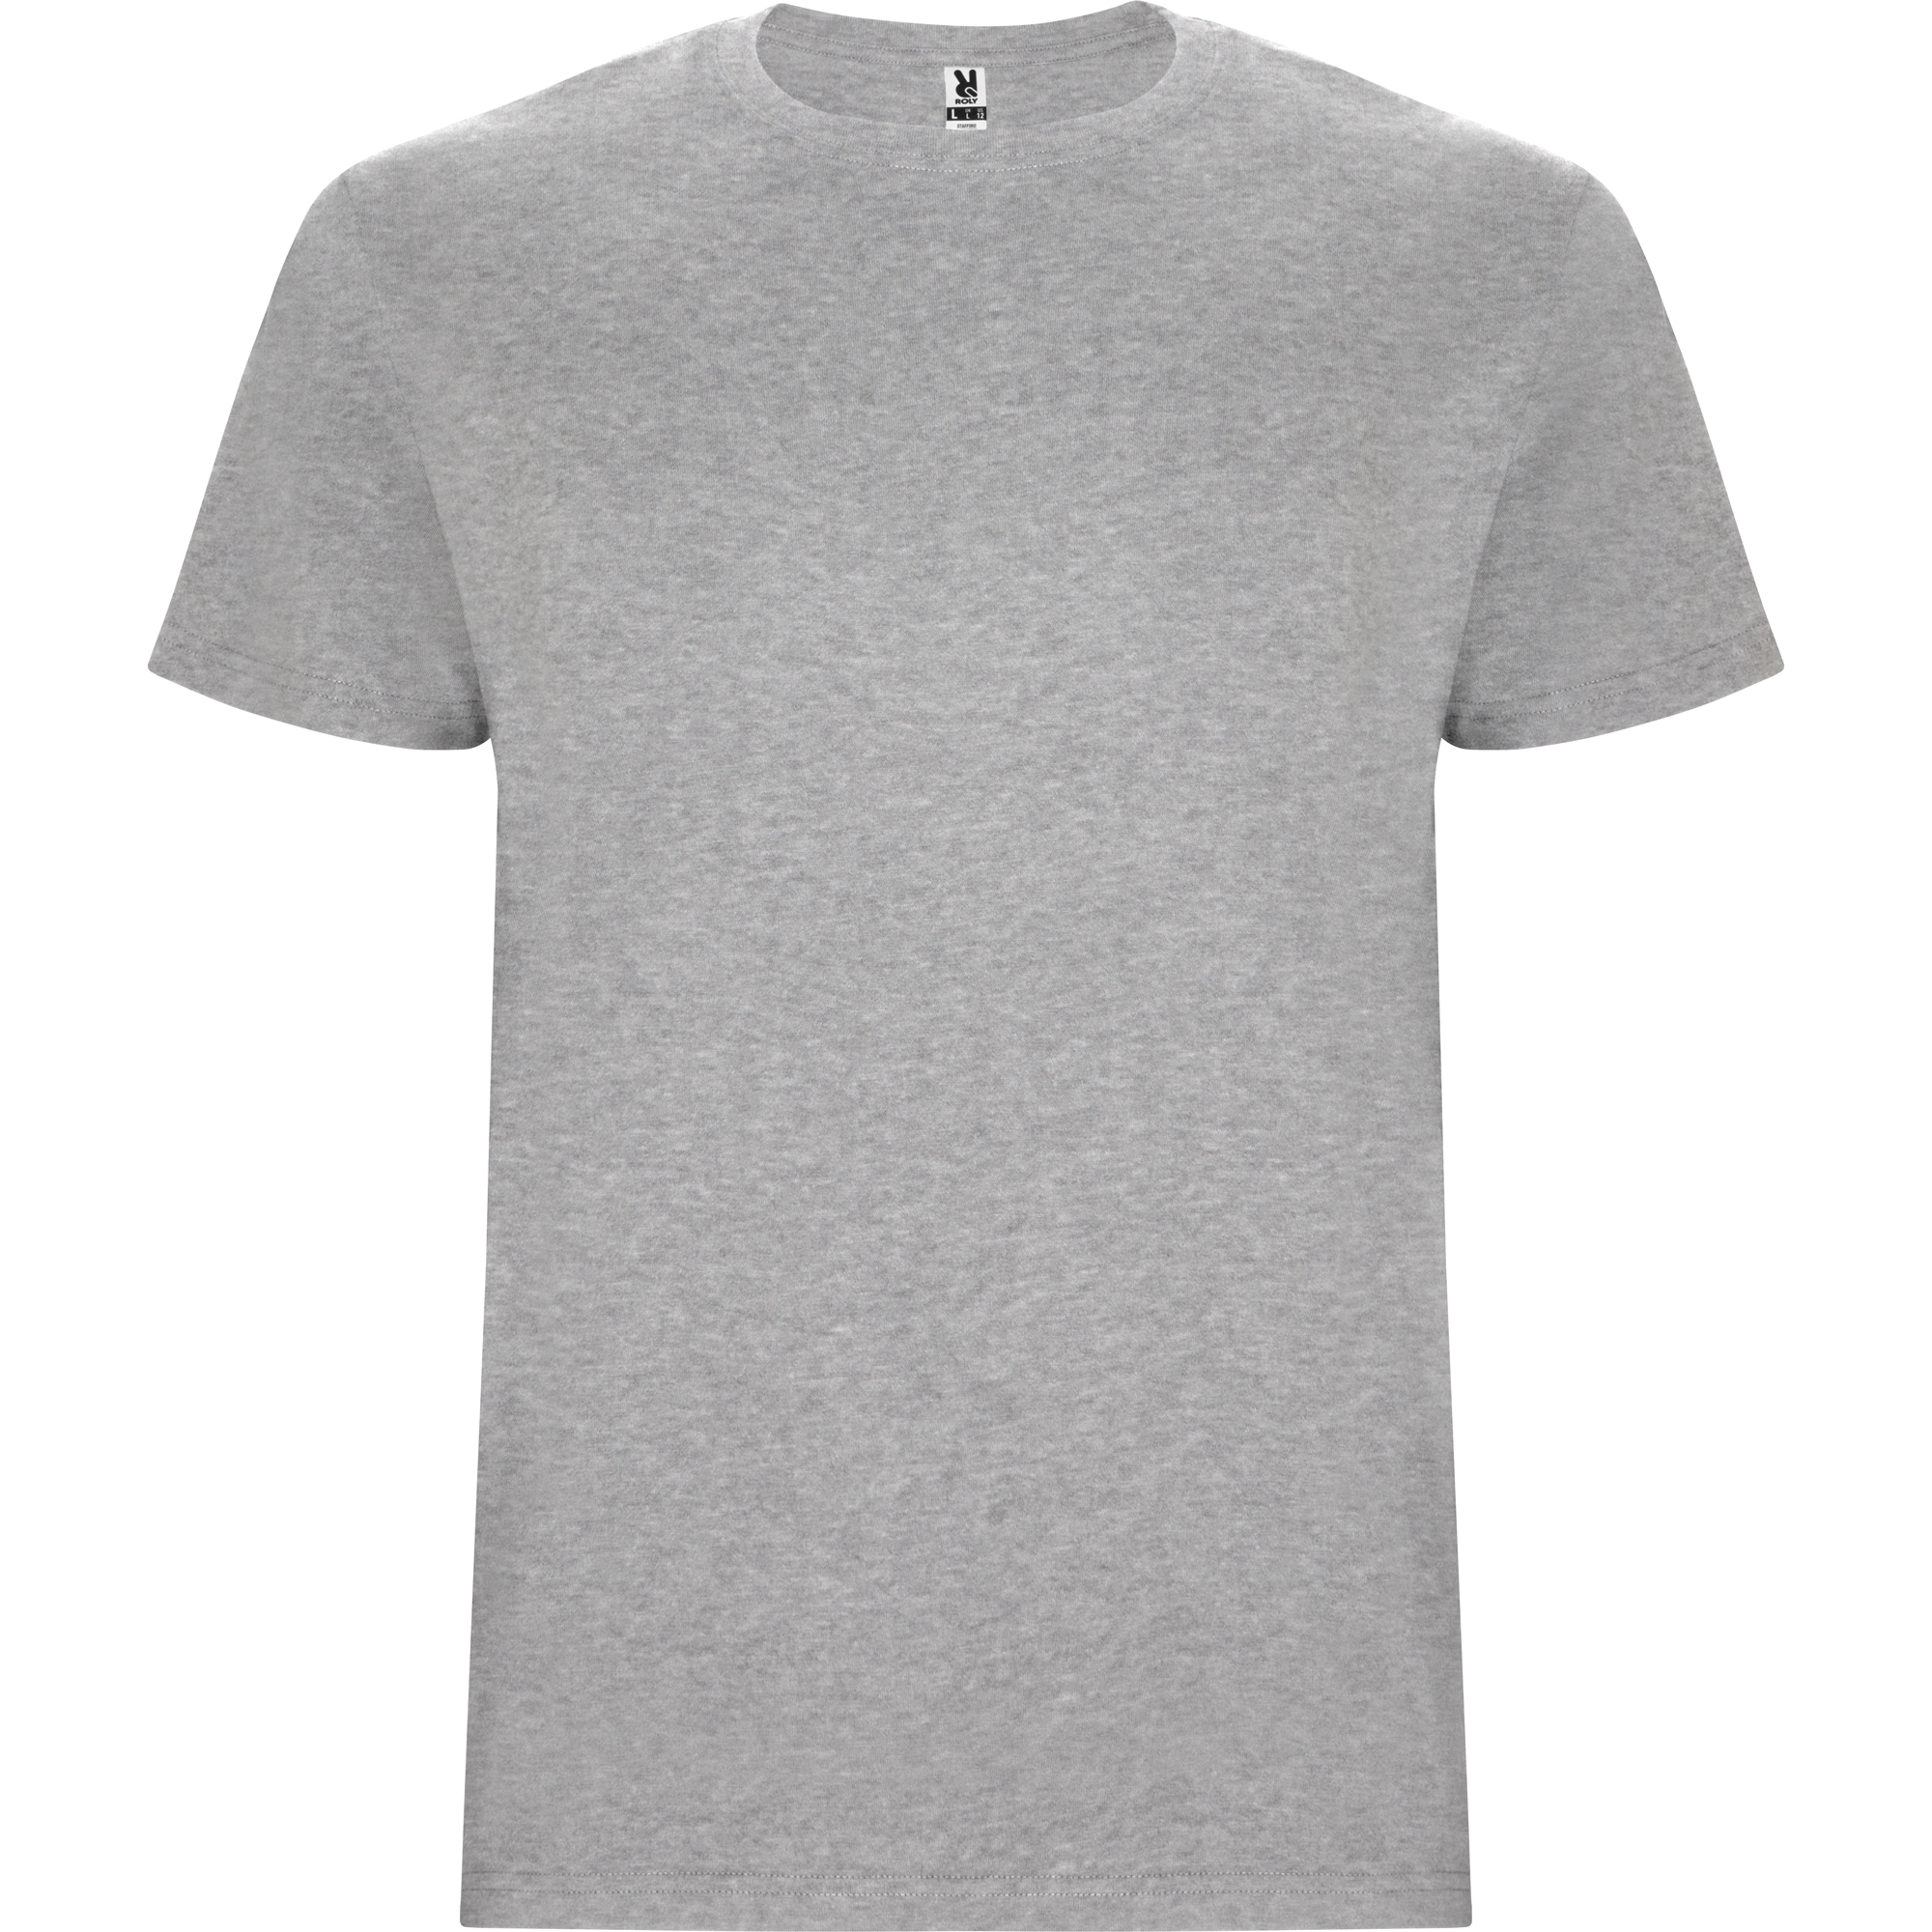 r6681-roly-stafford-t-shirt-tubolare-grigio-vigore.jpg